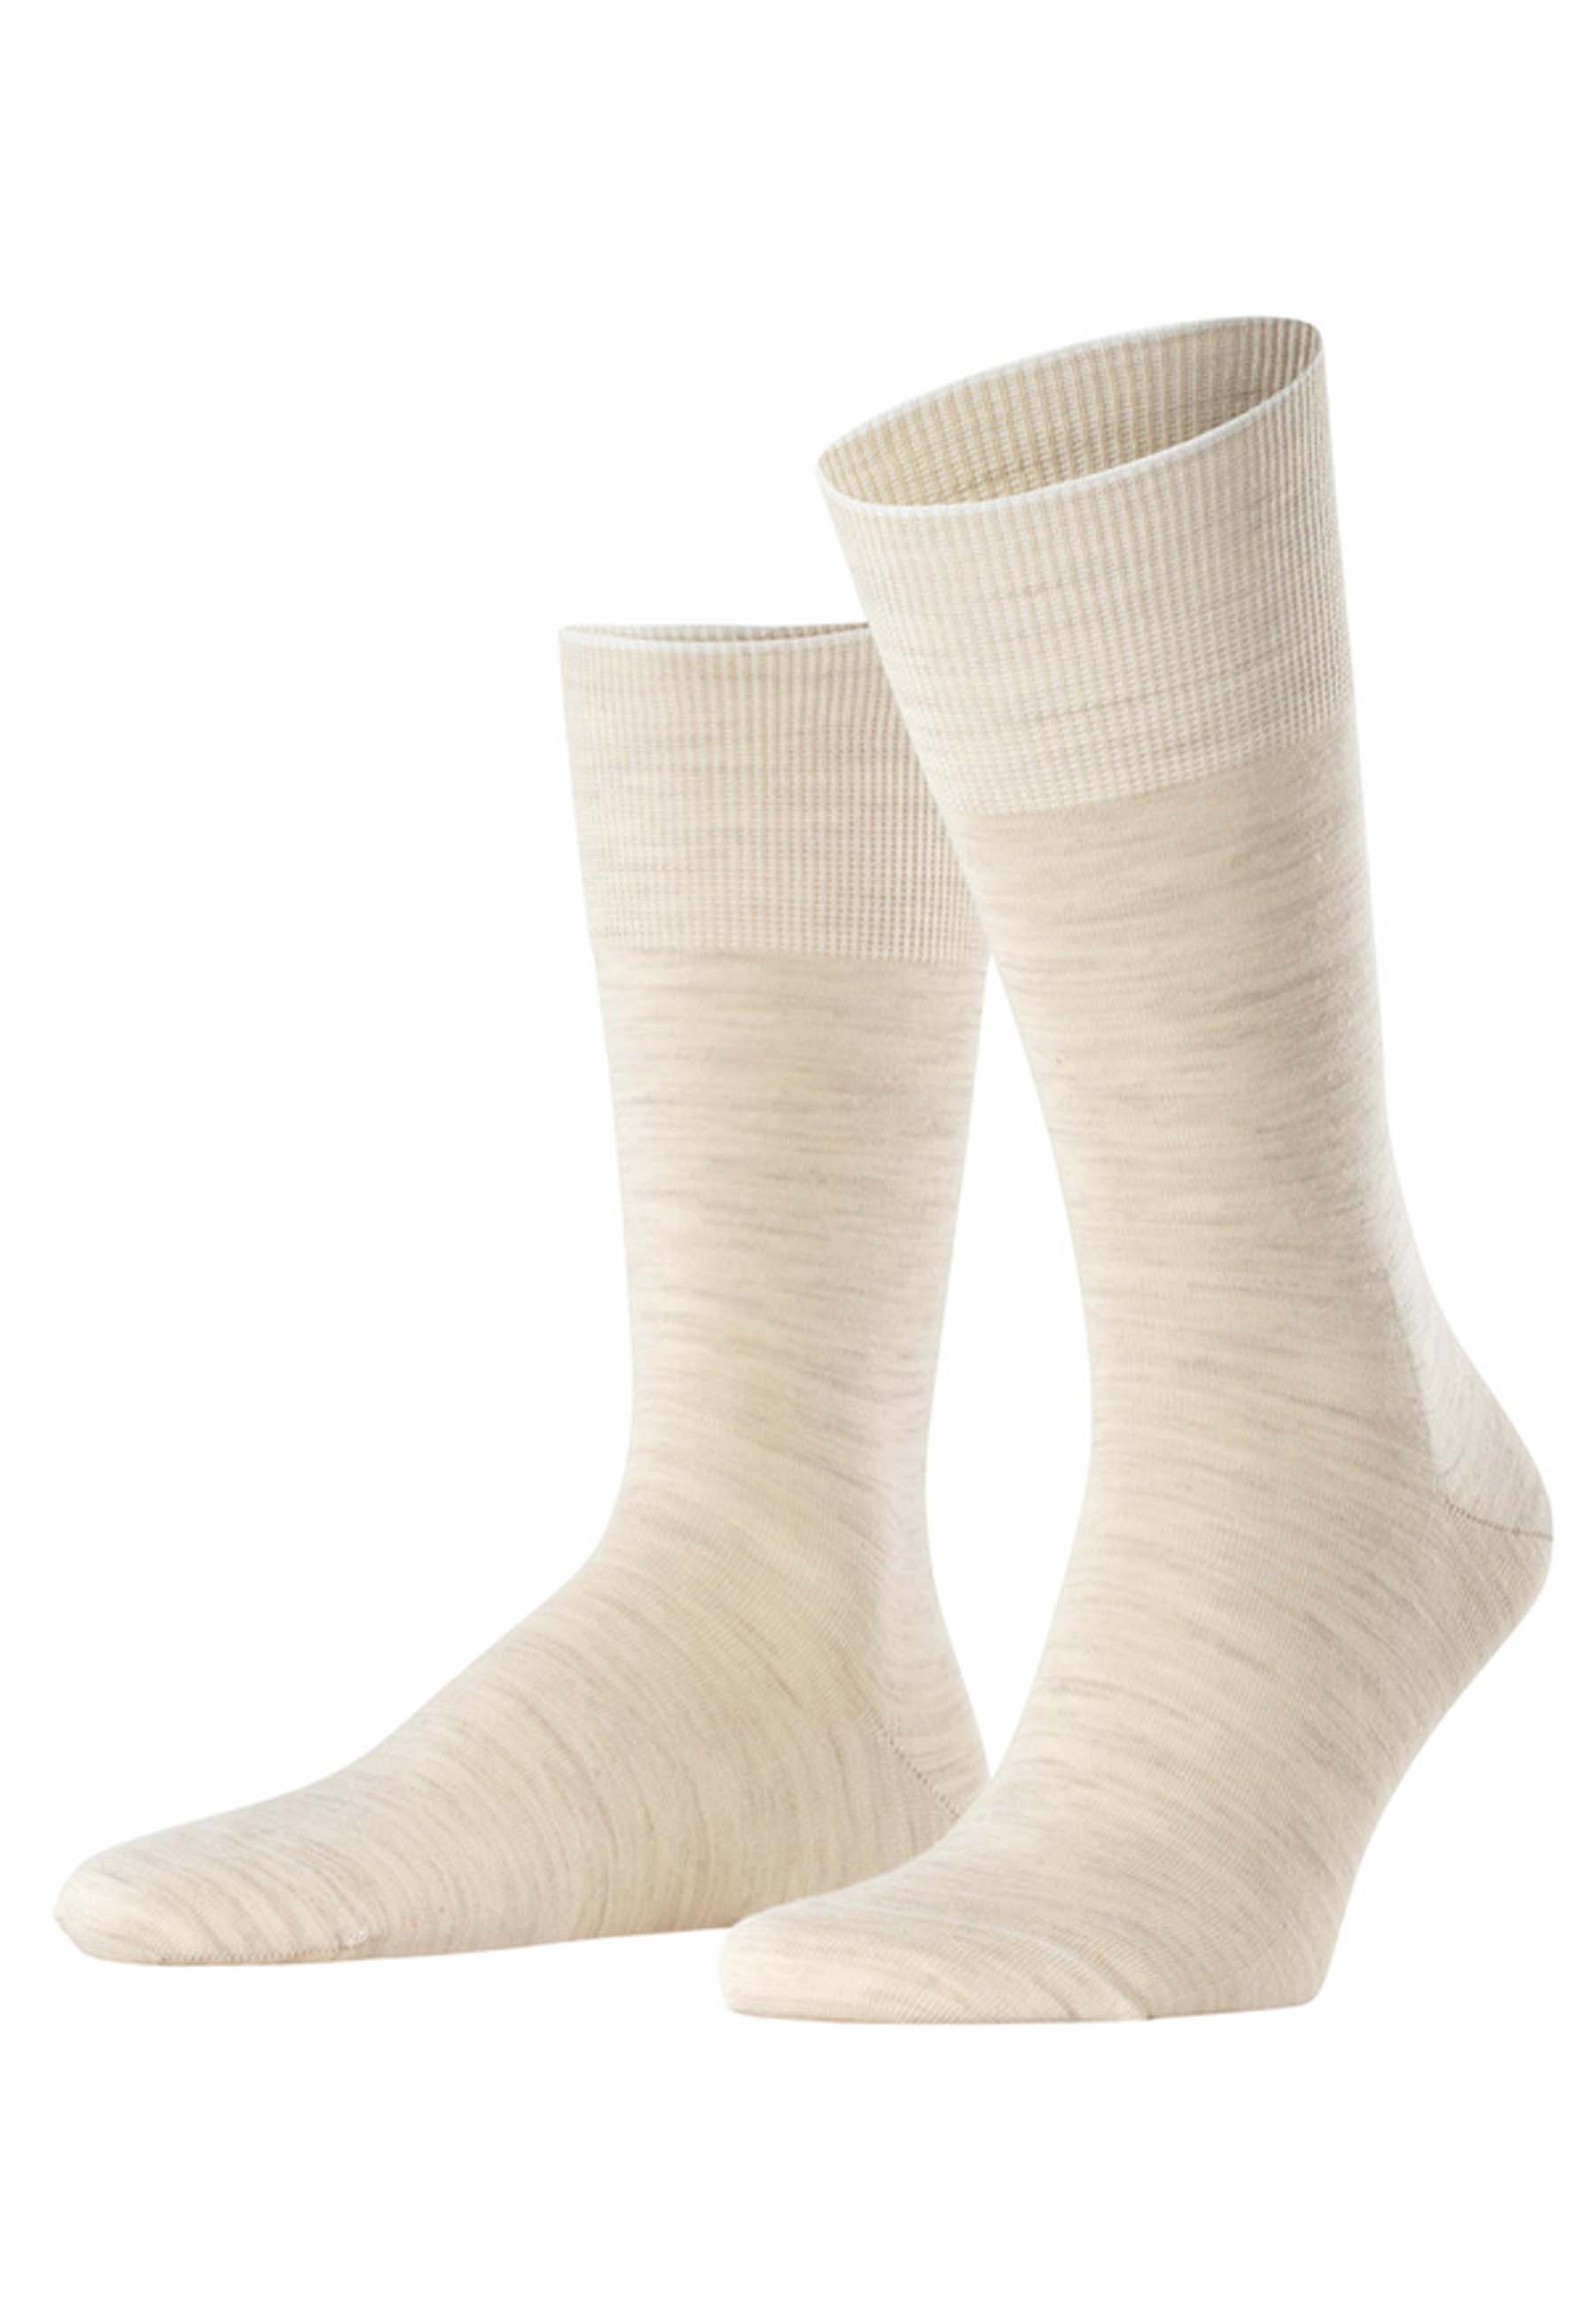 FALKE Sokken Beige Wol maat 39-40 hoge sokken beige